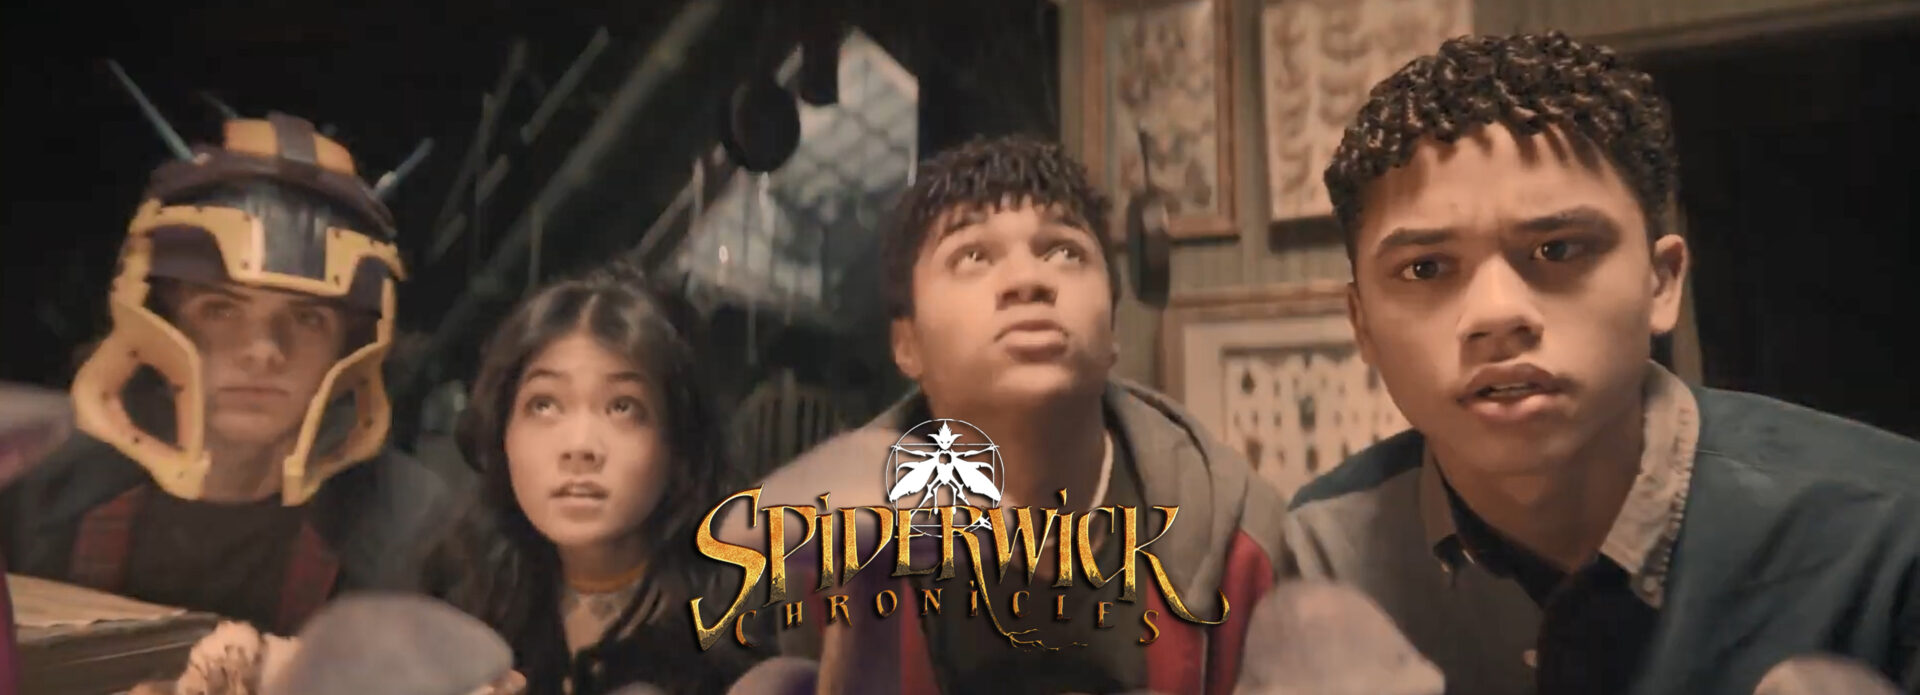 spiderwick chronicles teaser banner